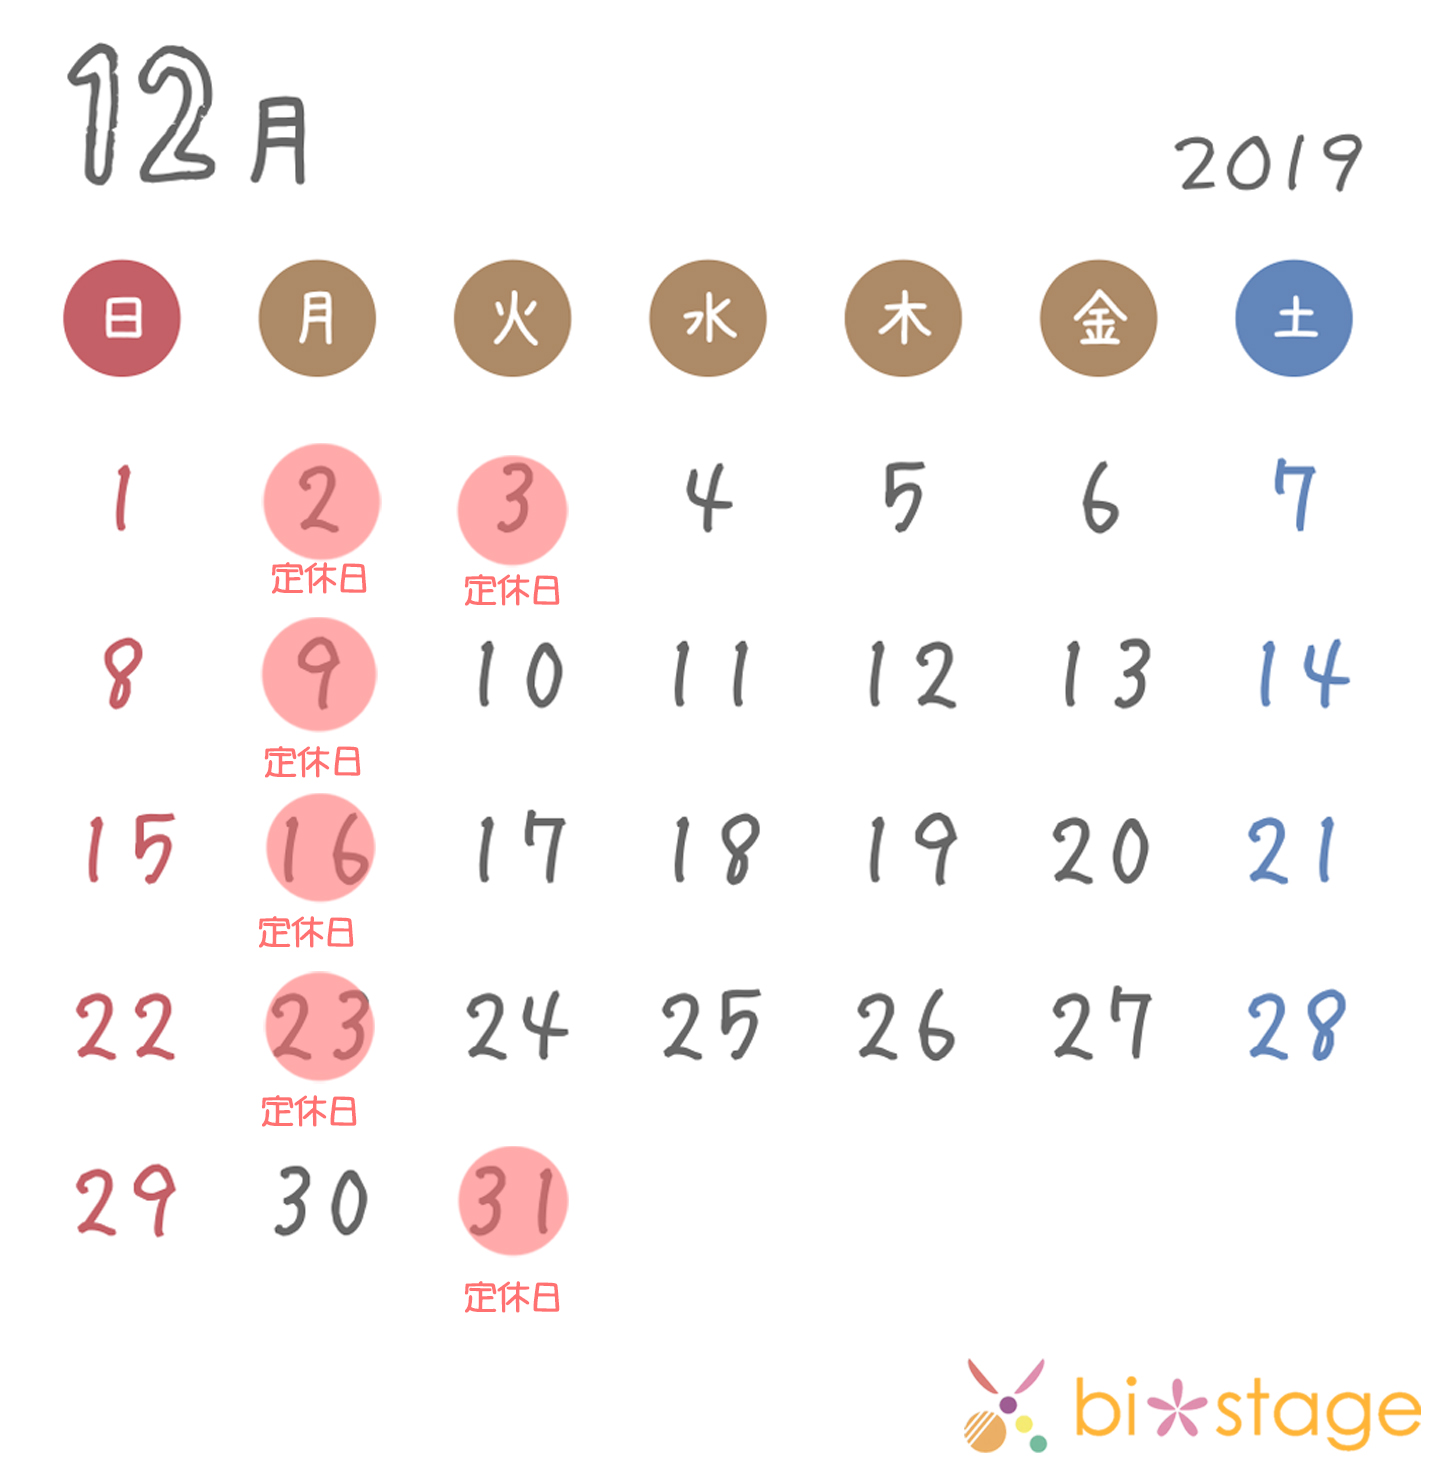 2019年12月カレンダー